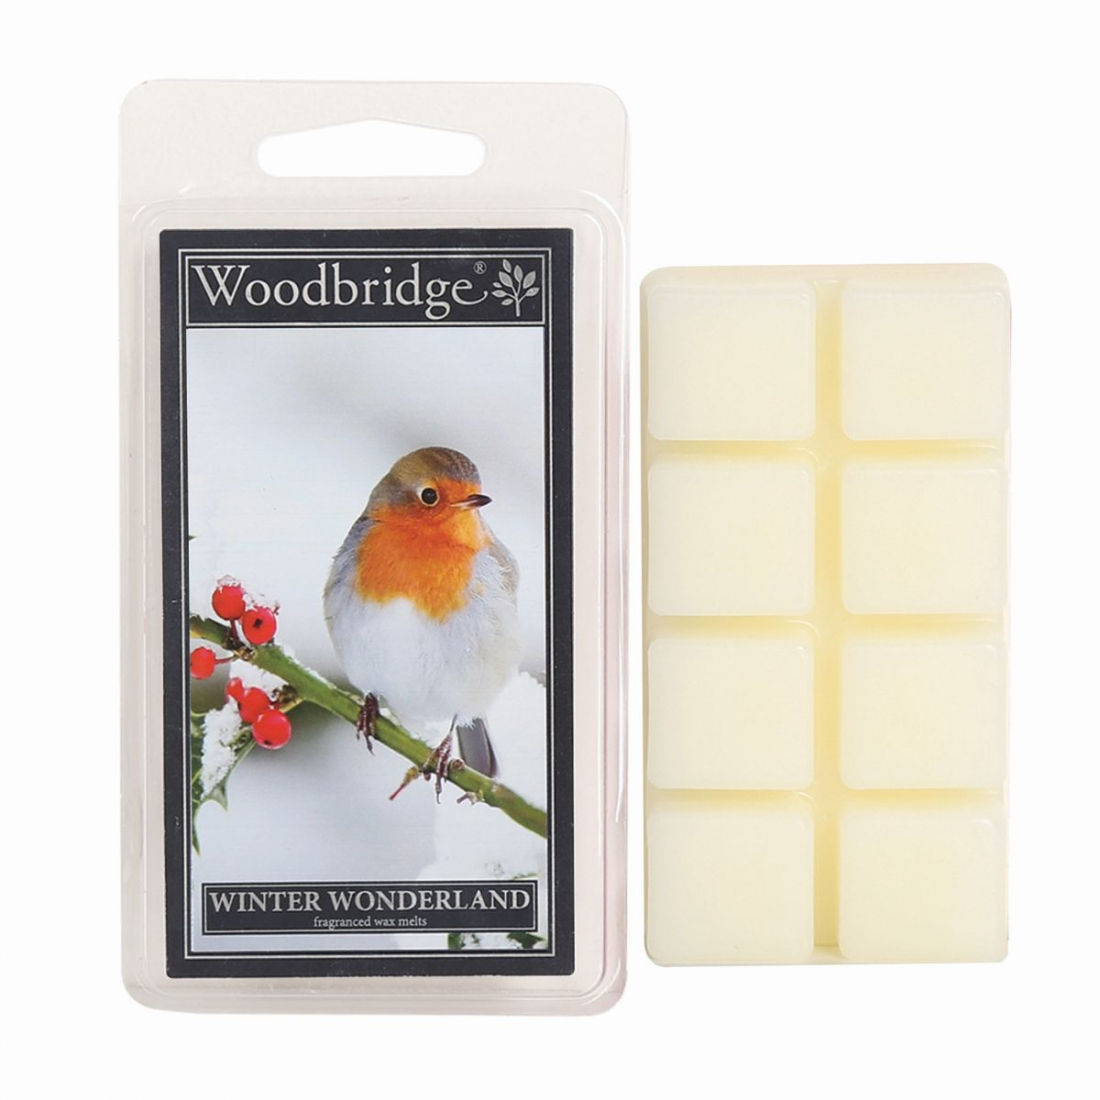 'Winter Wonderland' Wax Melt - 68 g